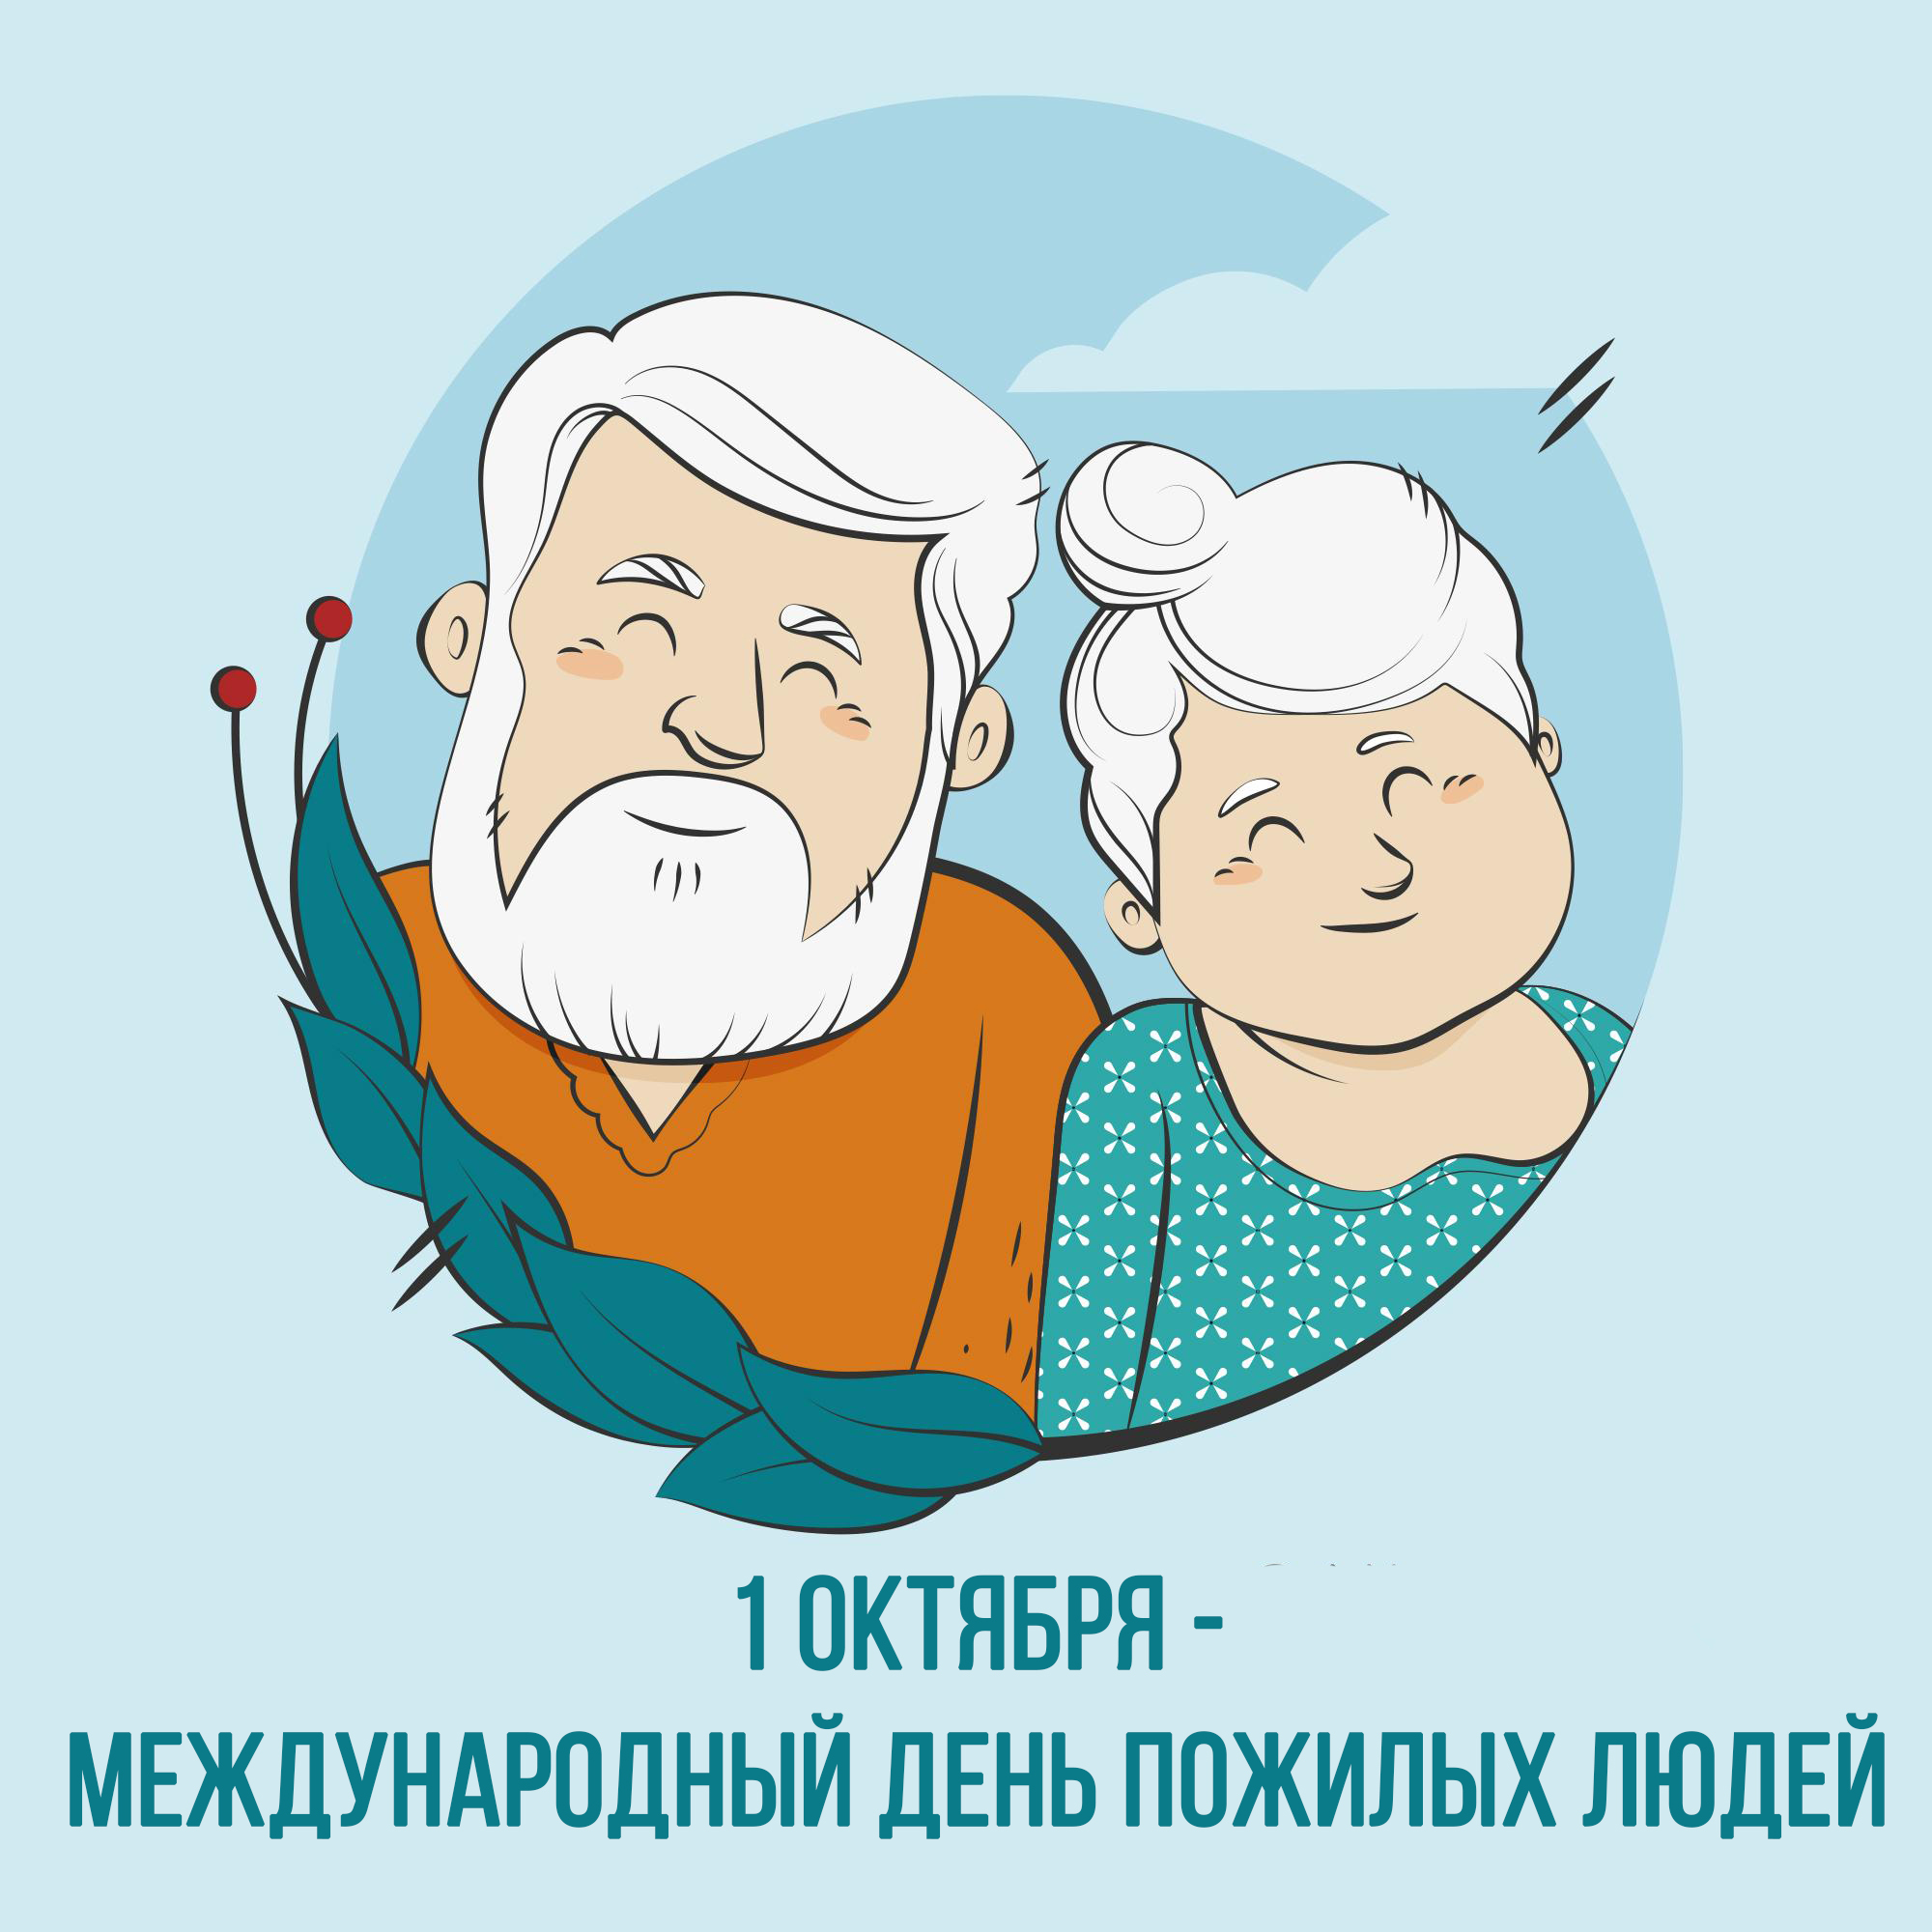 Россия день пожилых